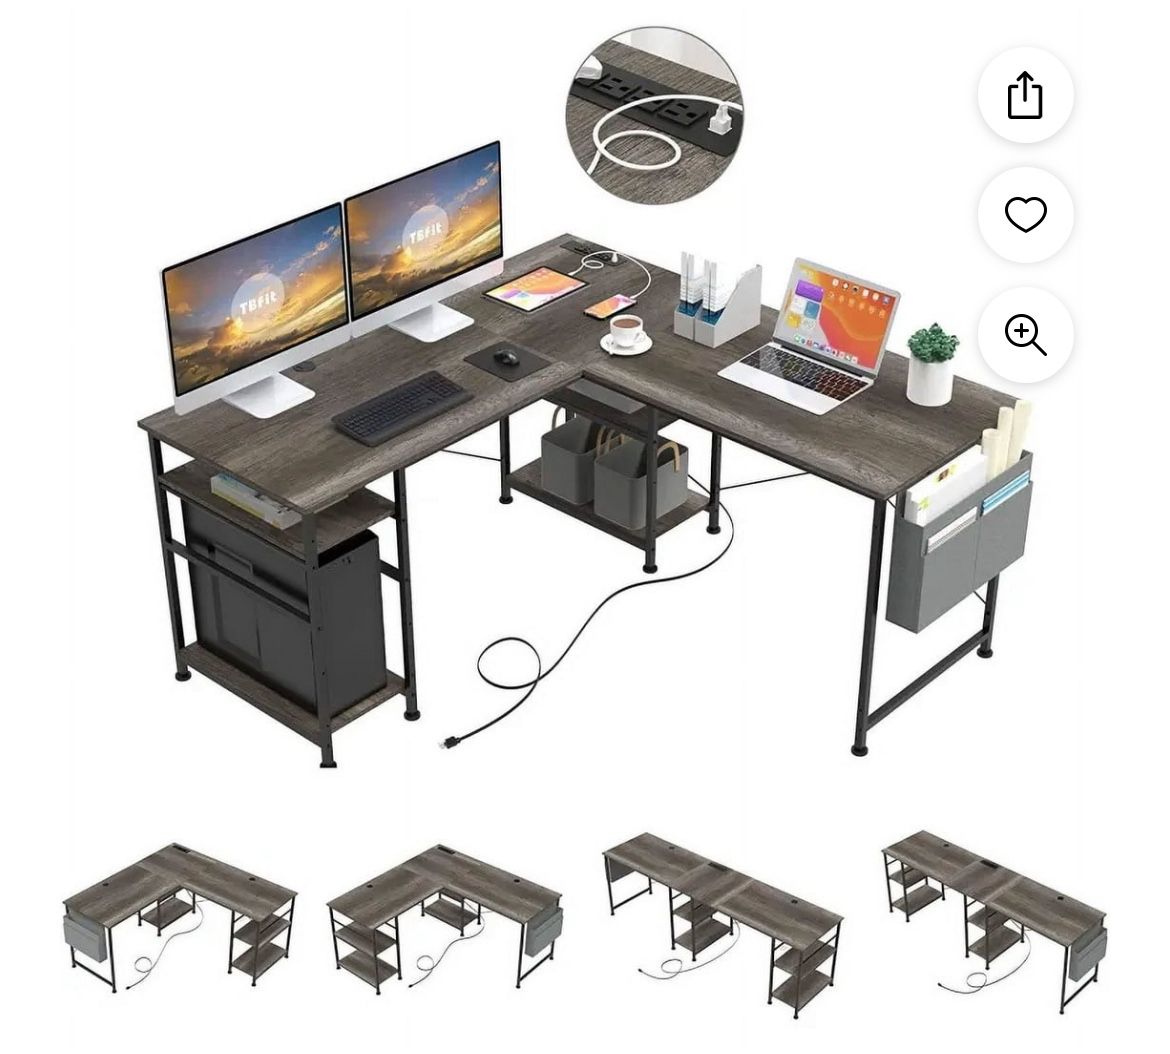 L Shaped Computer Desk  - Gaming Desk with Power Outlet & USB Charging Port,Corner Reversible Computer Desk with Storage Shelves & LED Ligh